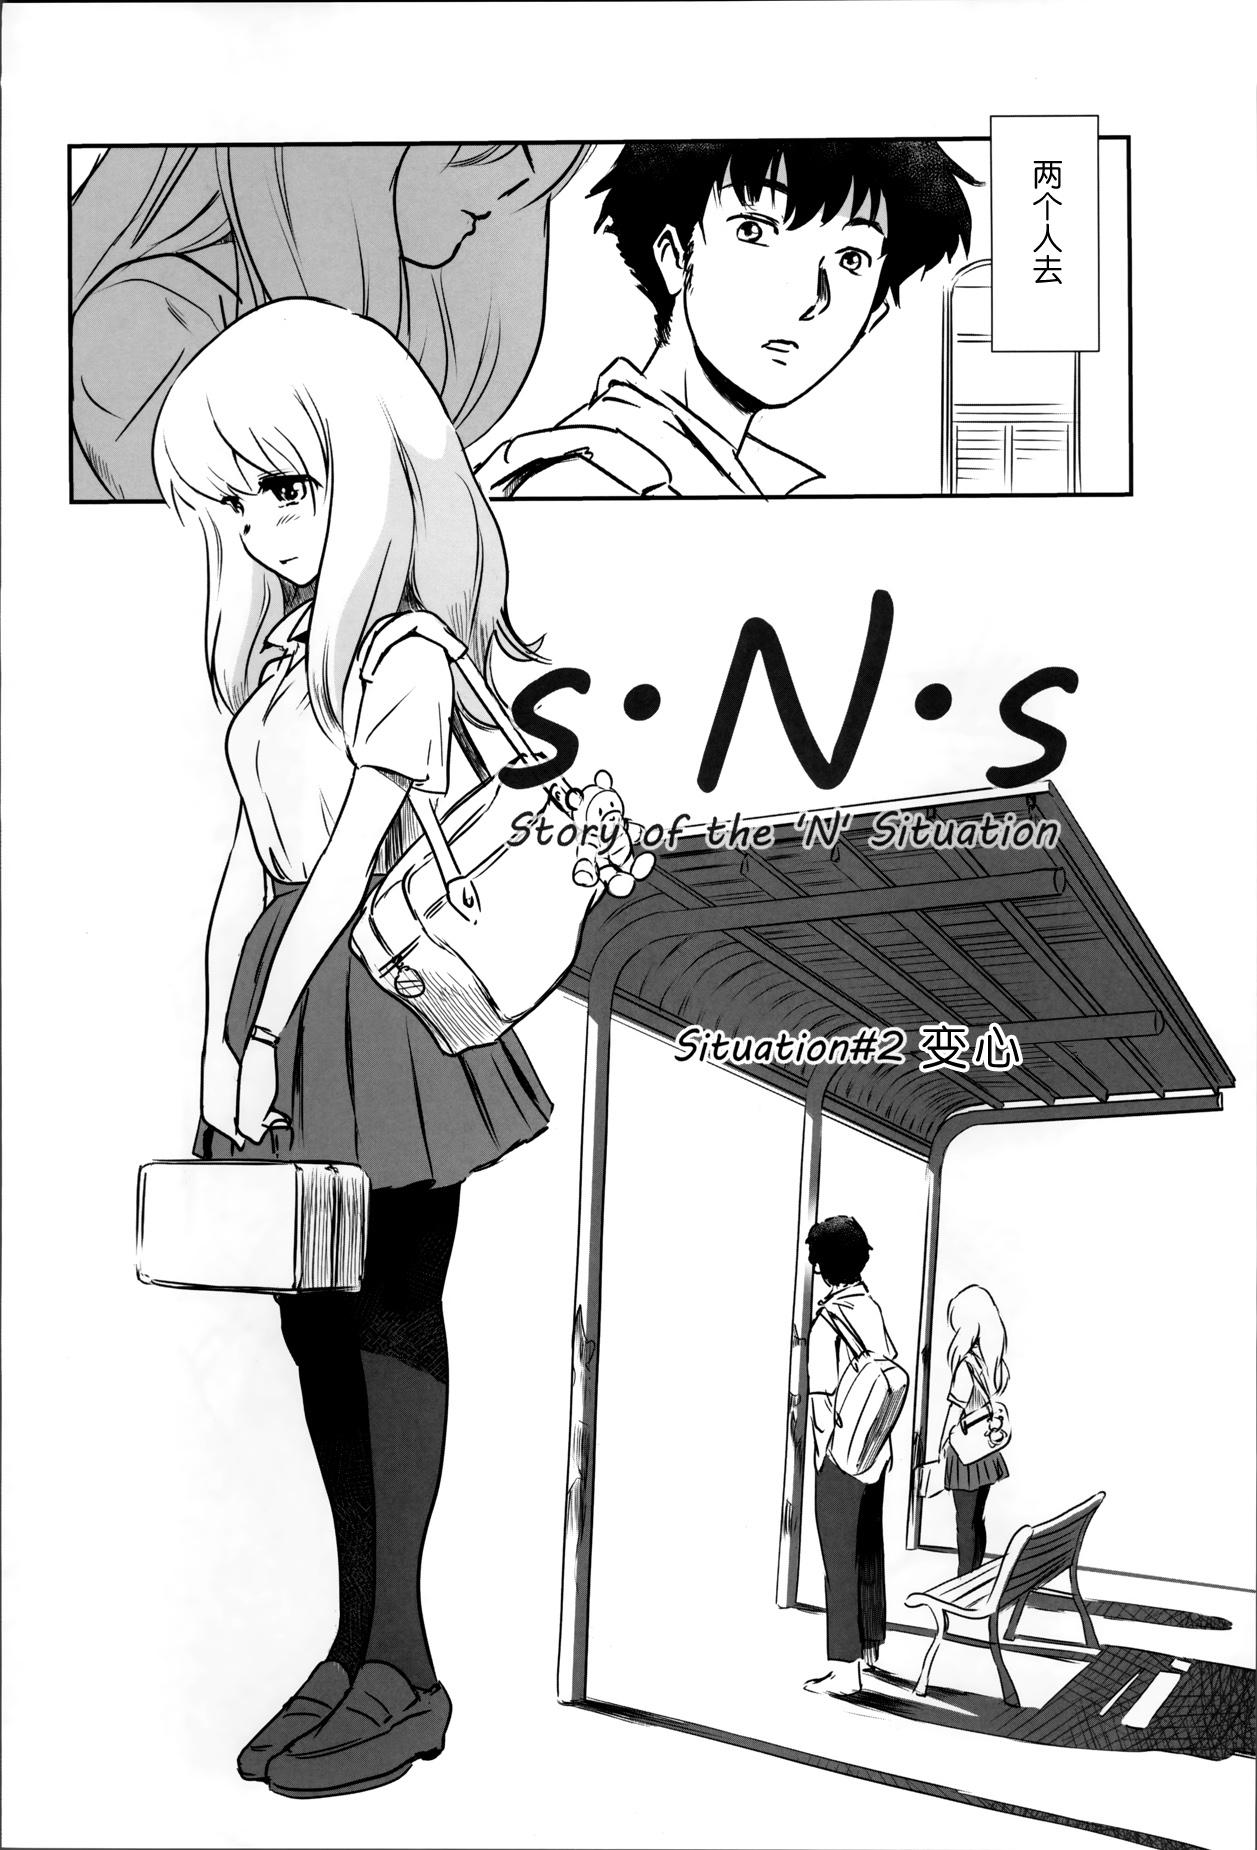 Story of the 'N' Situation - Situation#2 Kokoro Utsuri 3